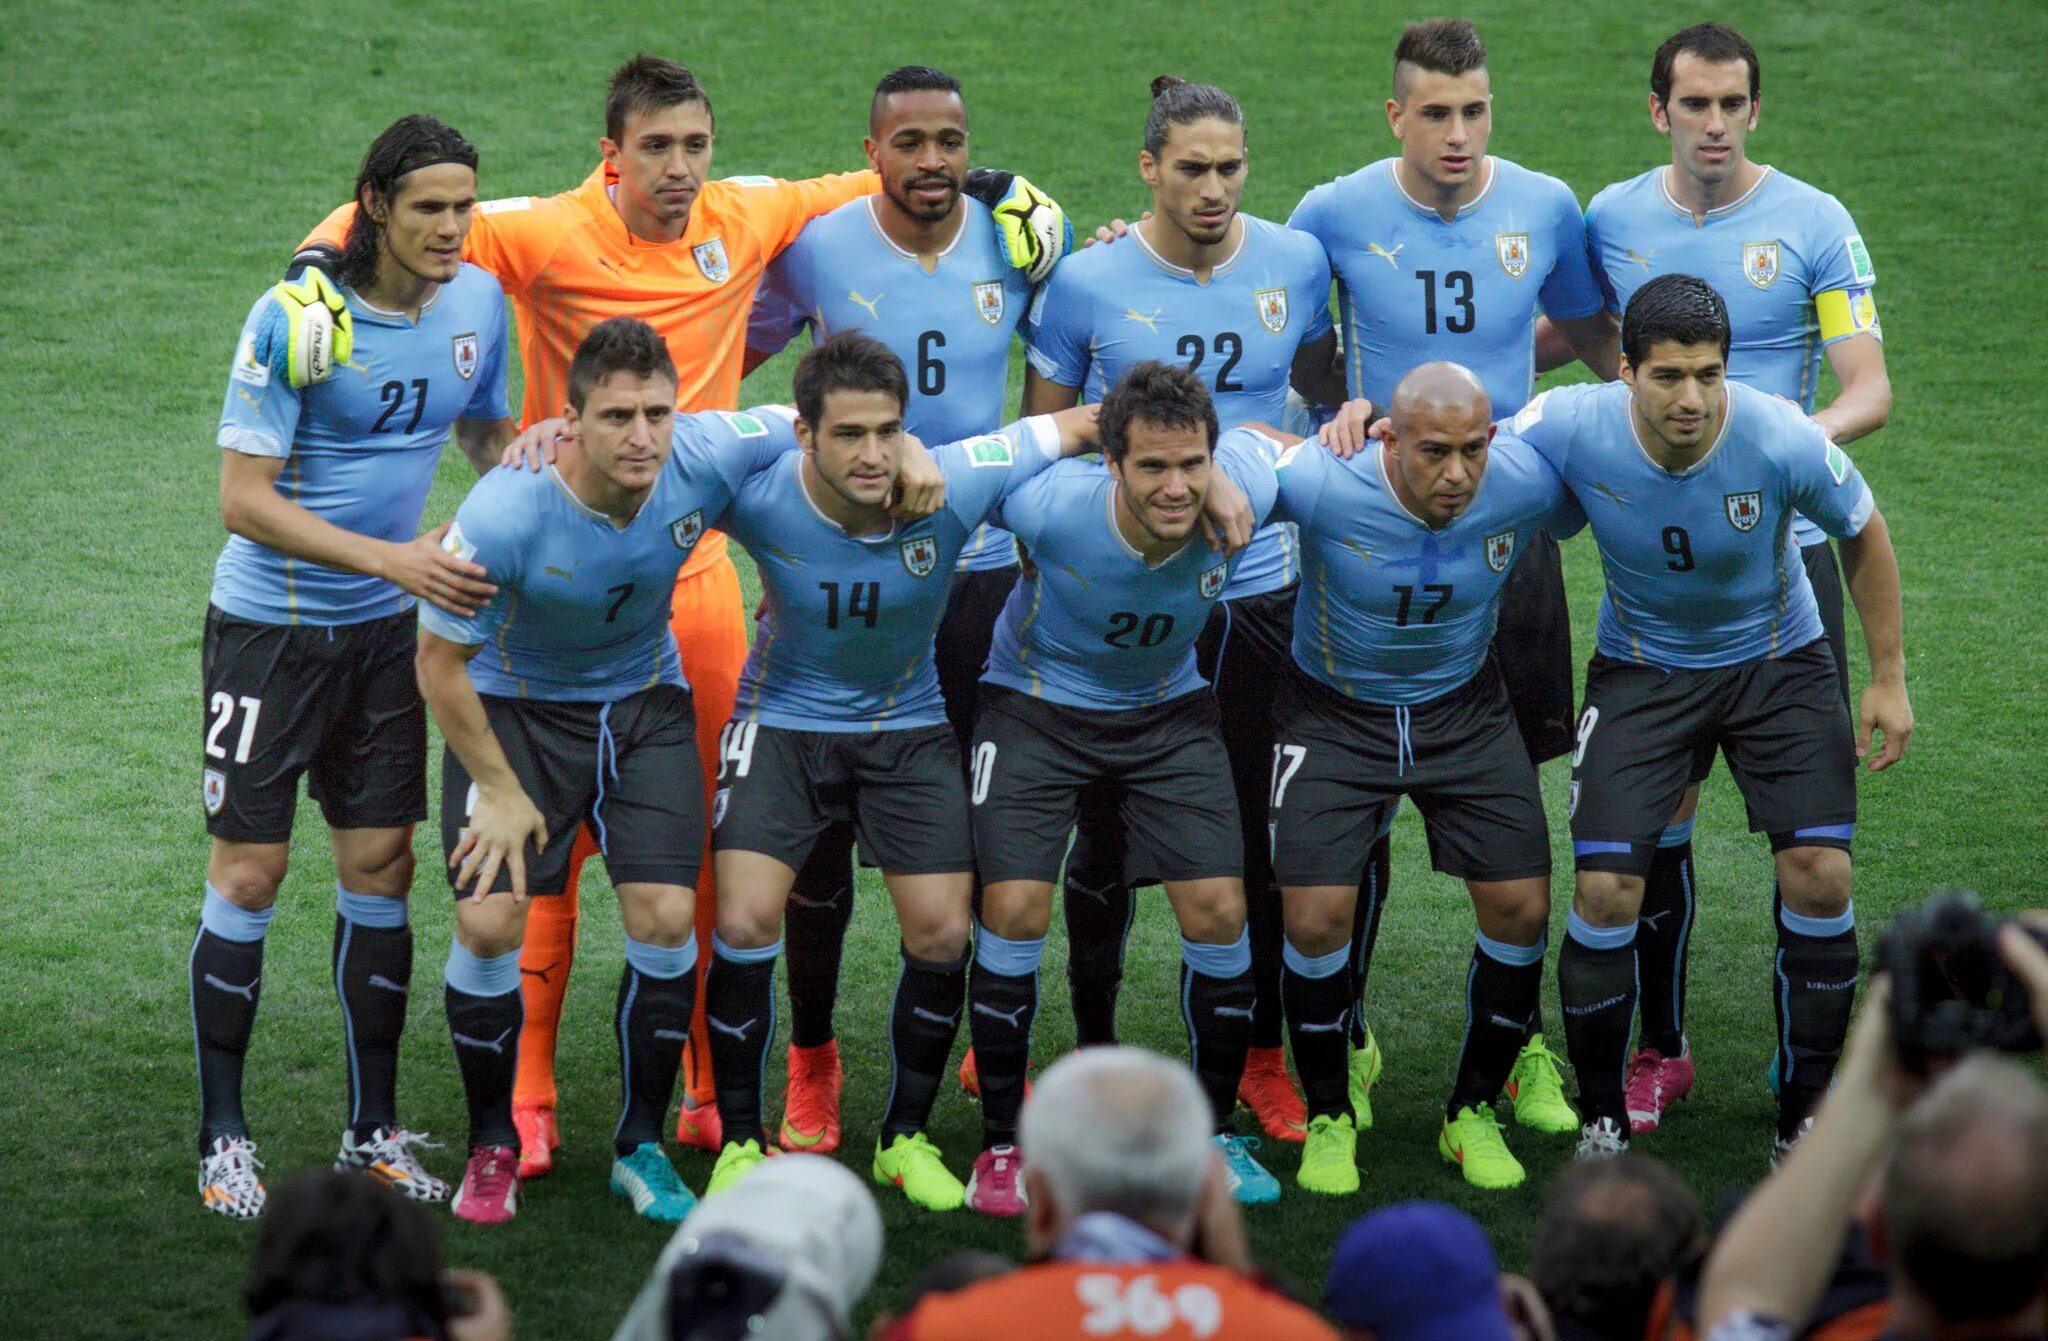 Uruguay National Team. Сборная Уругвая 2018. Сборная Уругвая по футболу 2017. Уругвай футбольная команда. Молодежная сборная уругвая по футболу